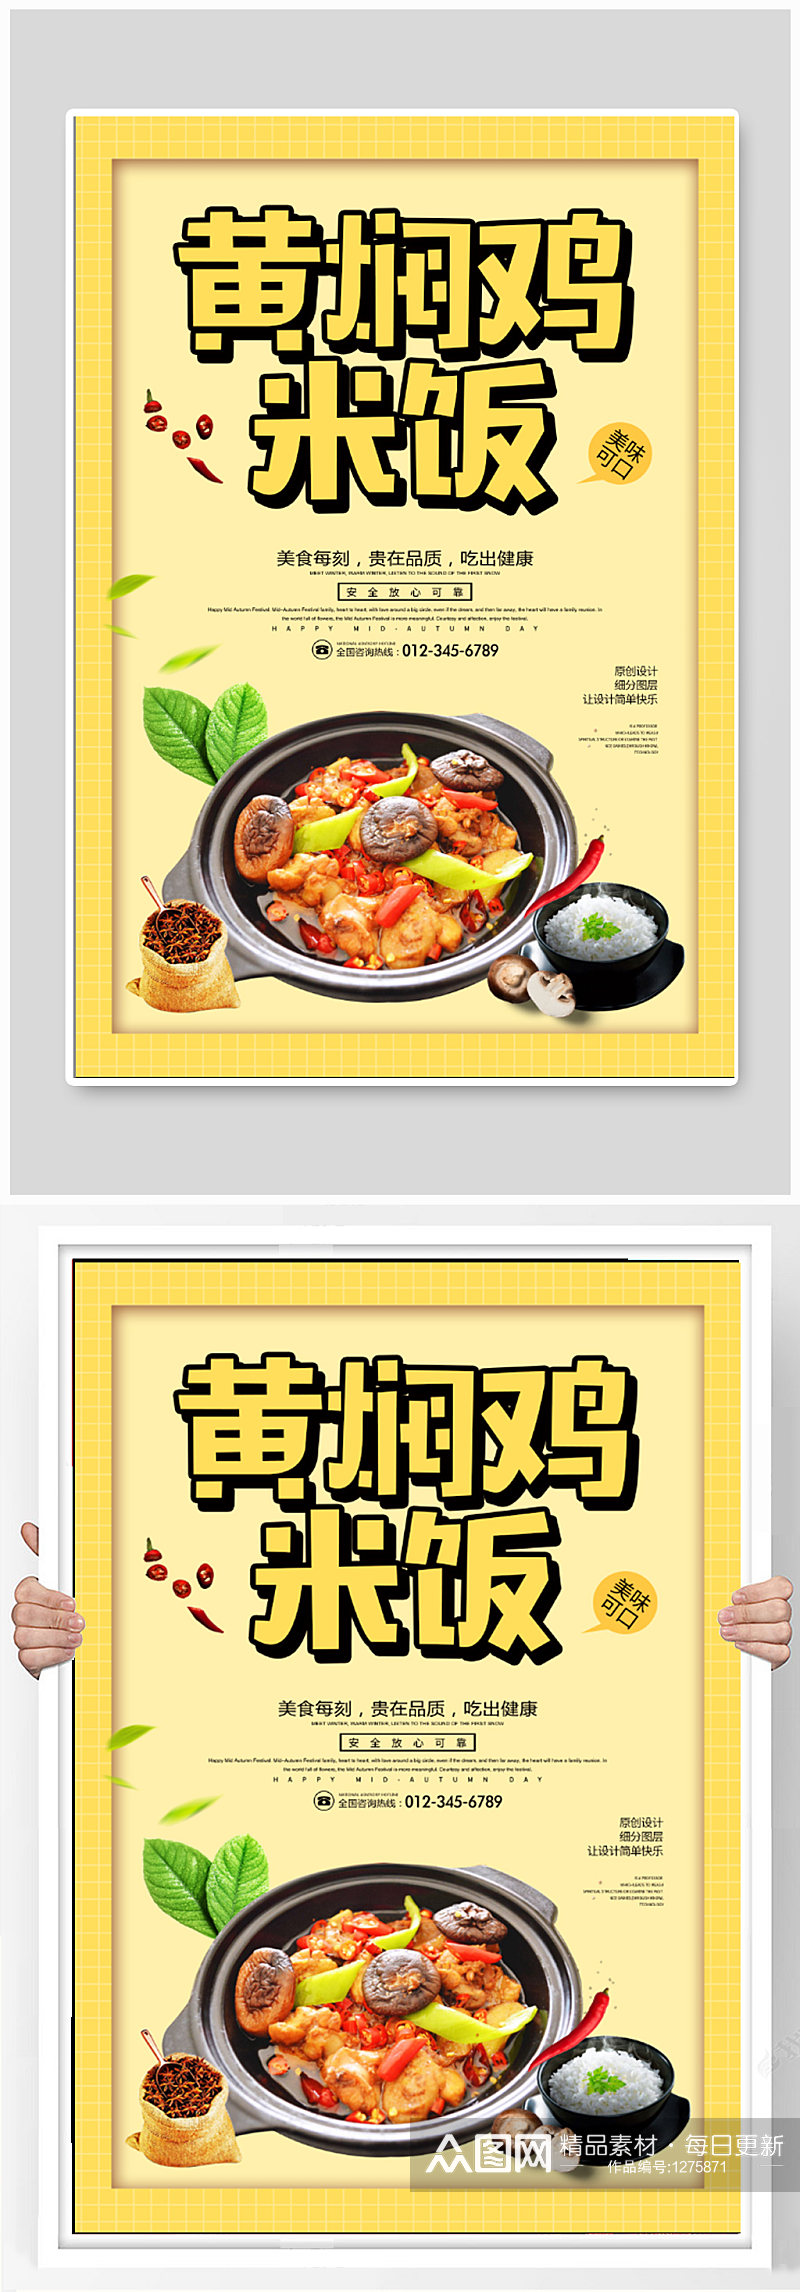 黄焖鸡米饭宣传海报素材